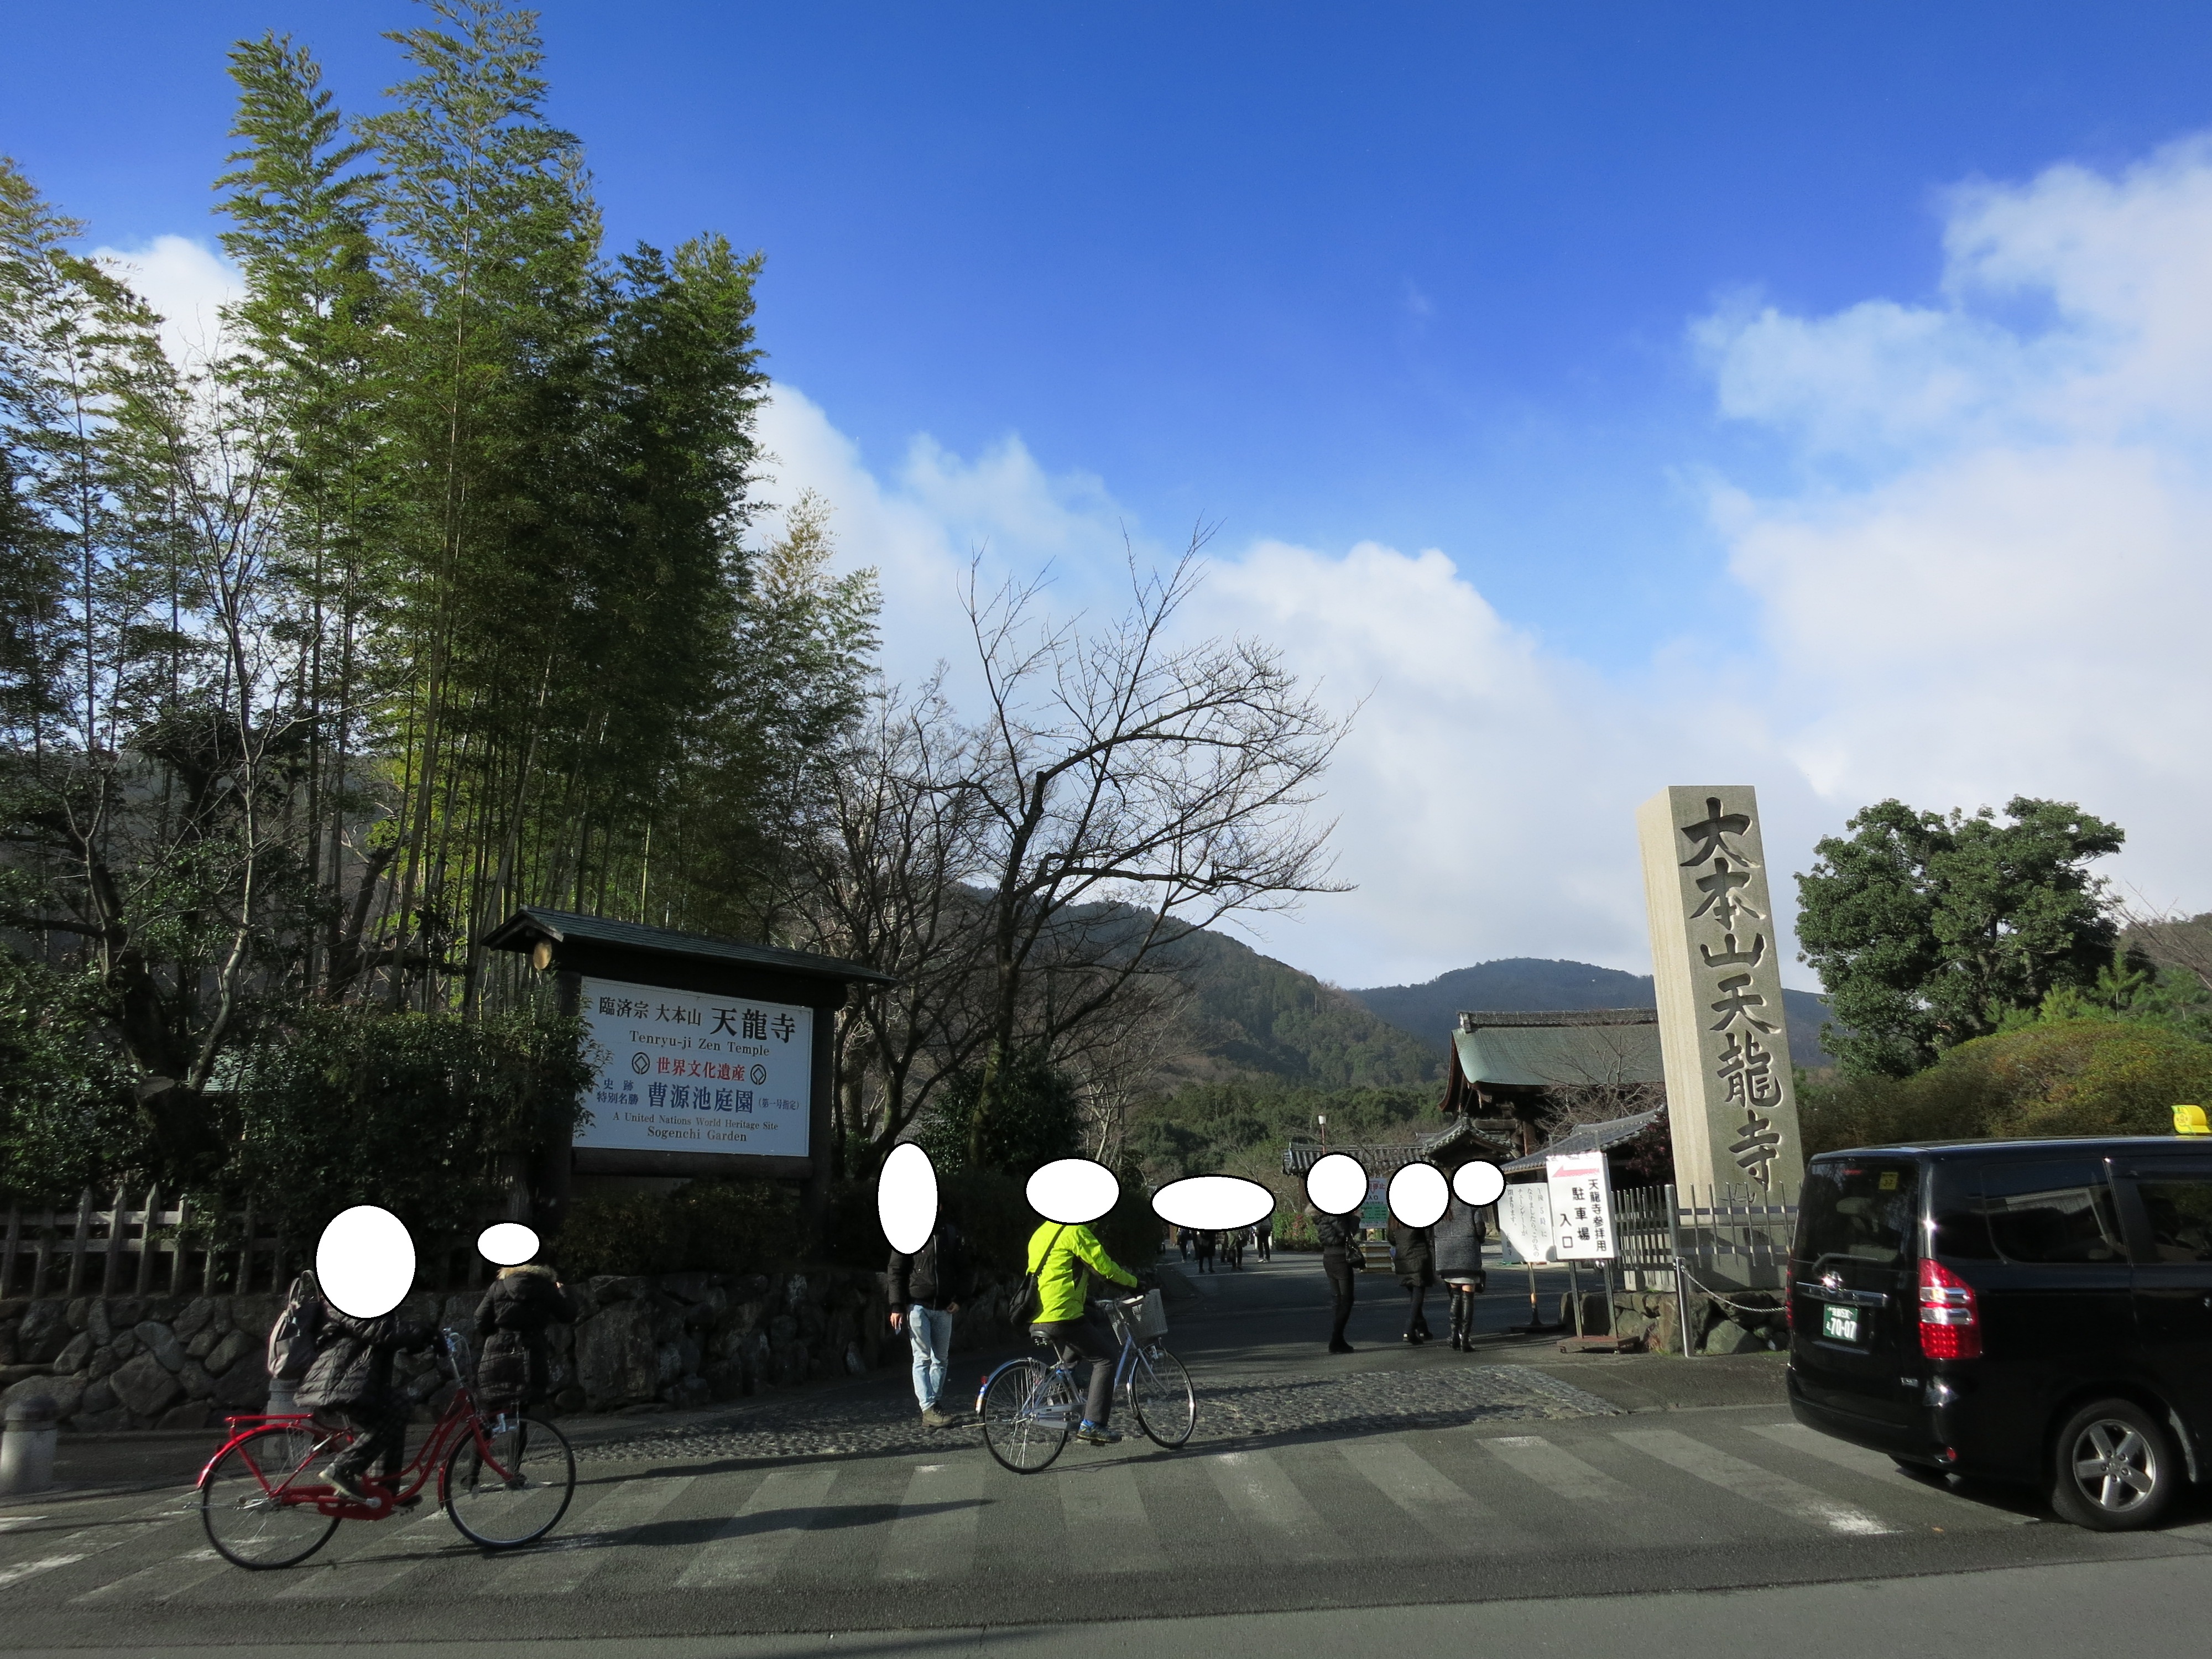 ホテルから歩いて嵐電嵐山駅へ向かいいます。途中世界遺産の天龍寺の前を通り、